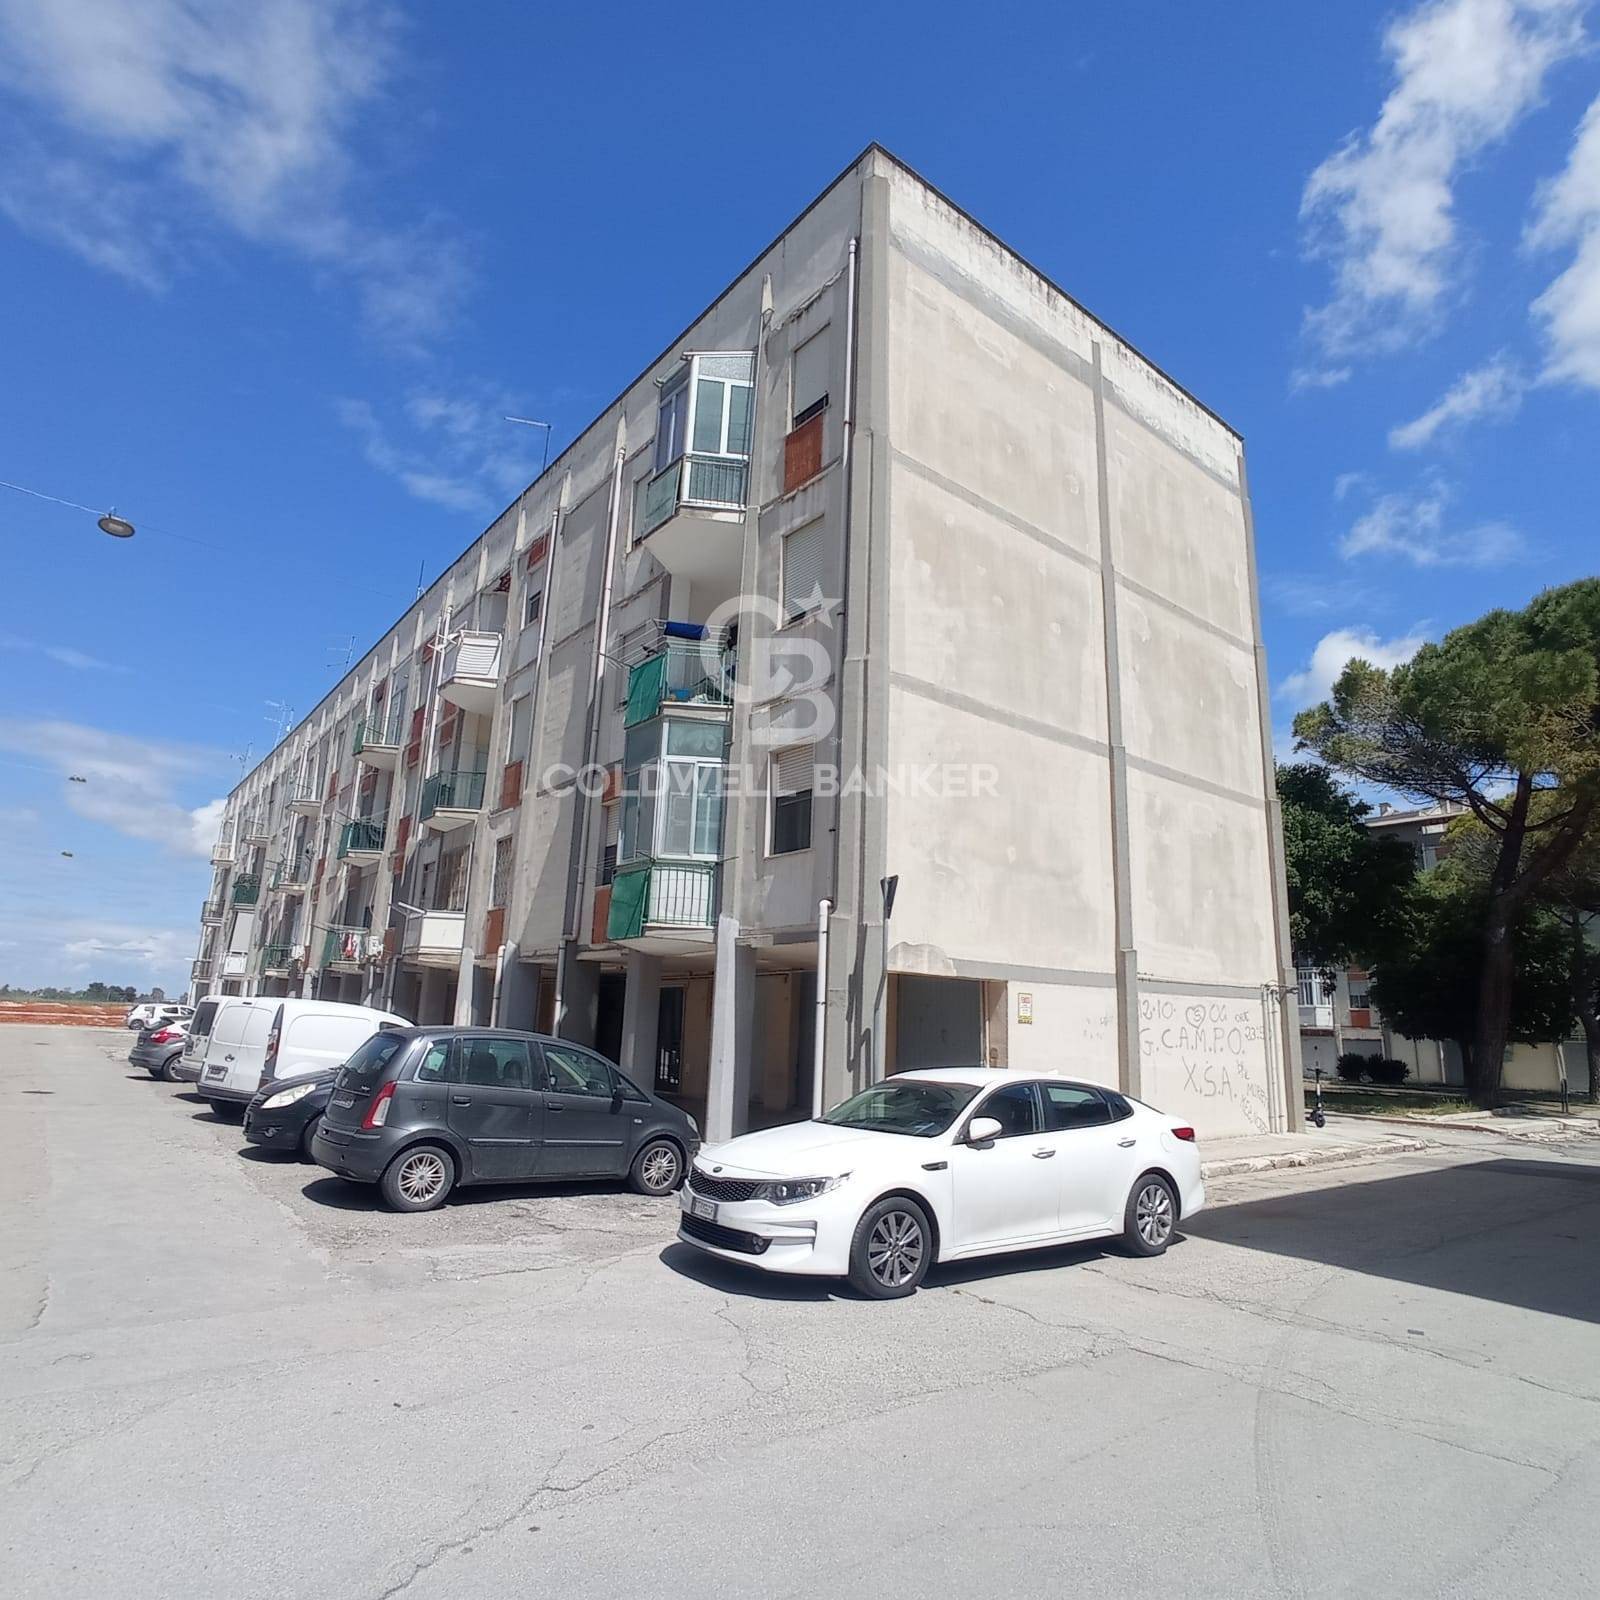 Appartamento in vendita a Brindisi, 4 locali, zona Zona: Paradiso, prezzo € 68.000 | CambioCasa.it